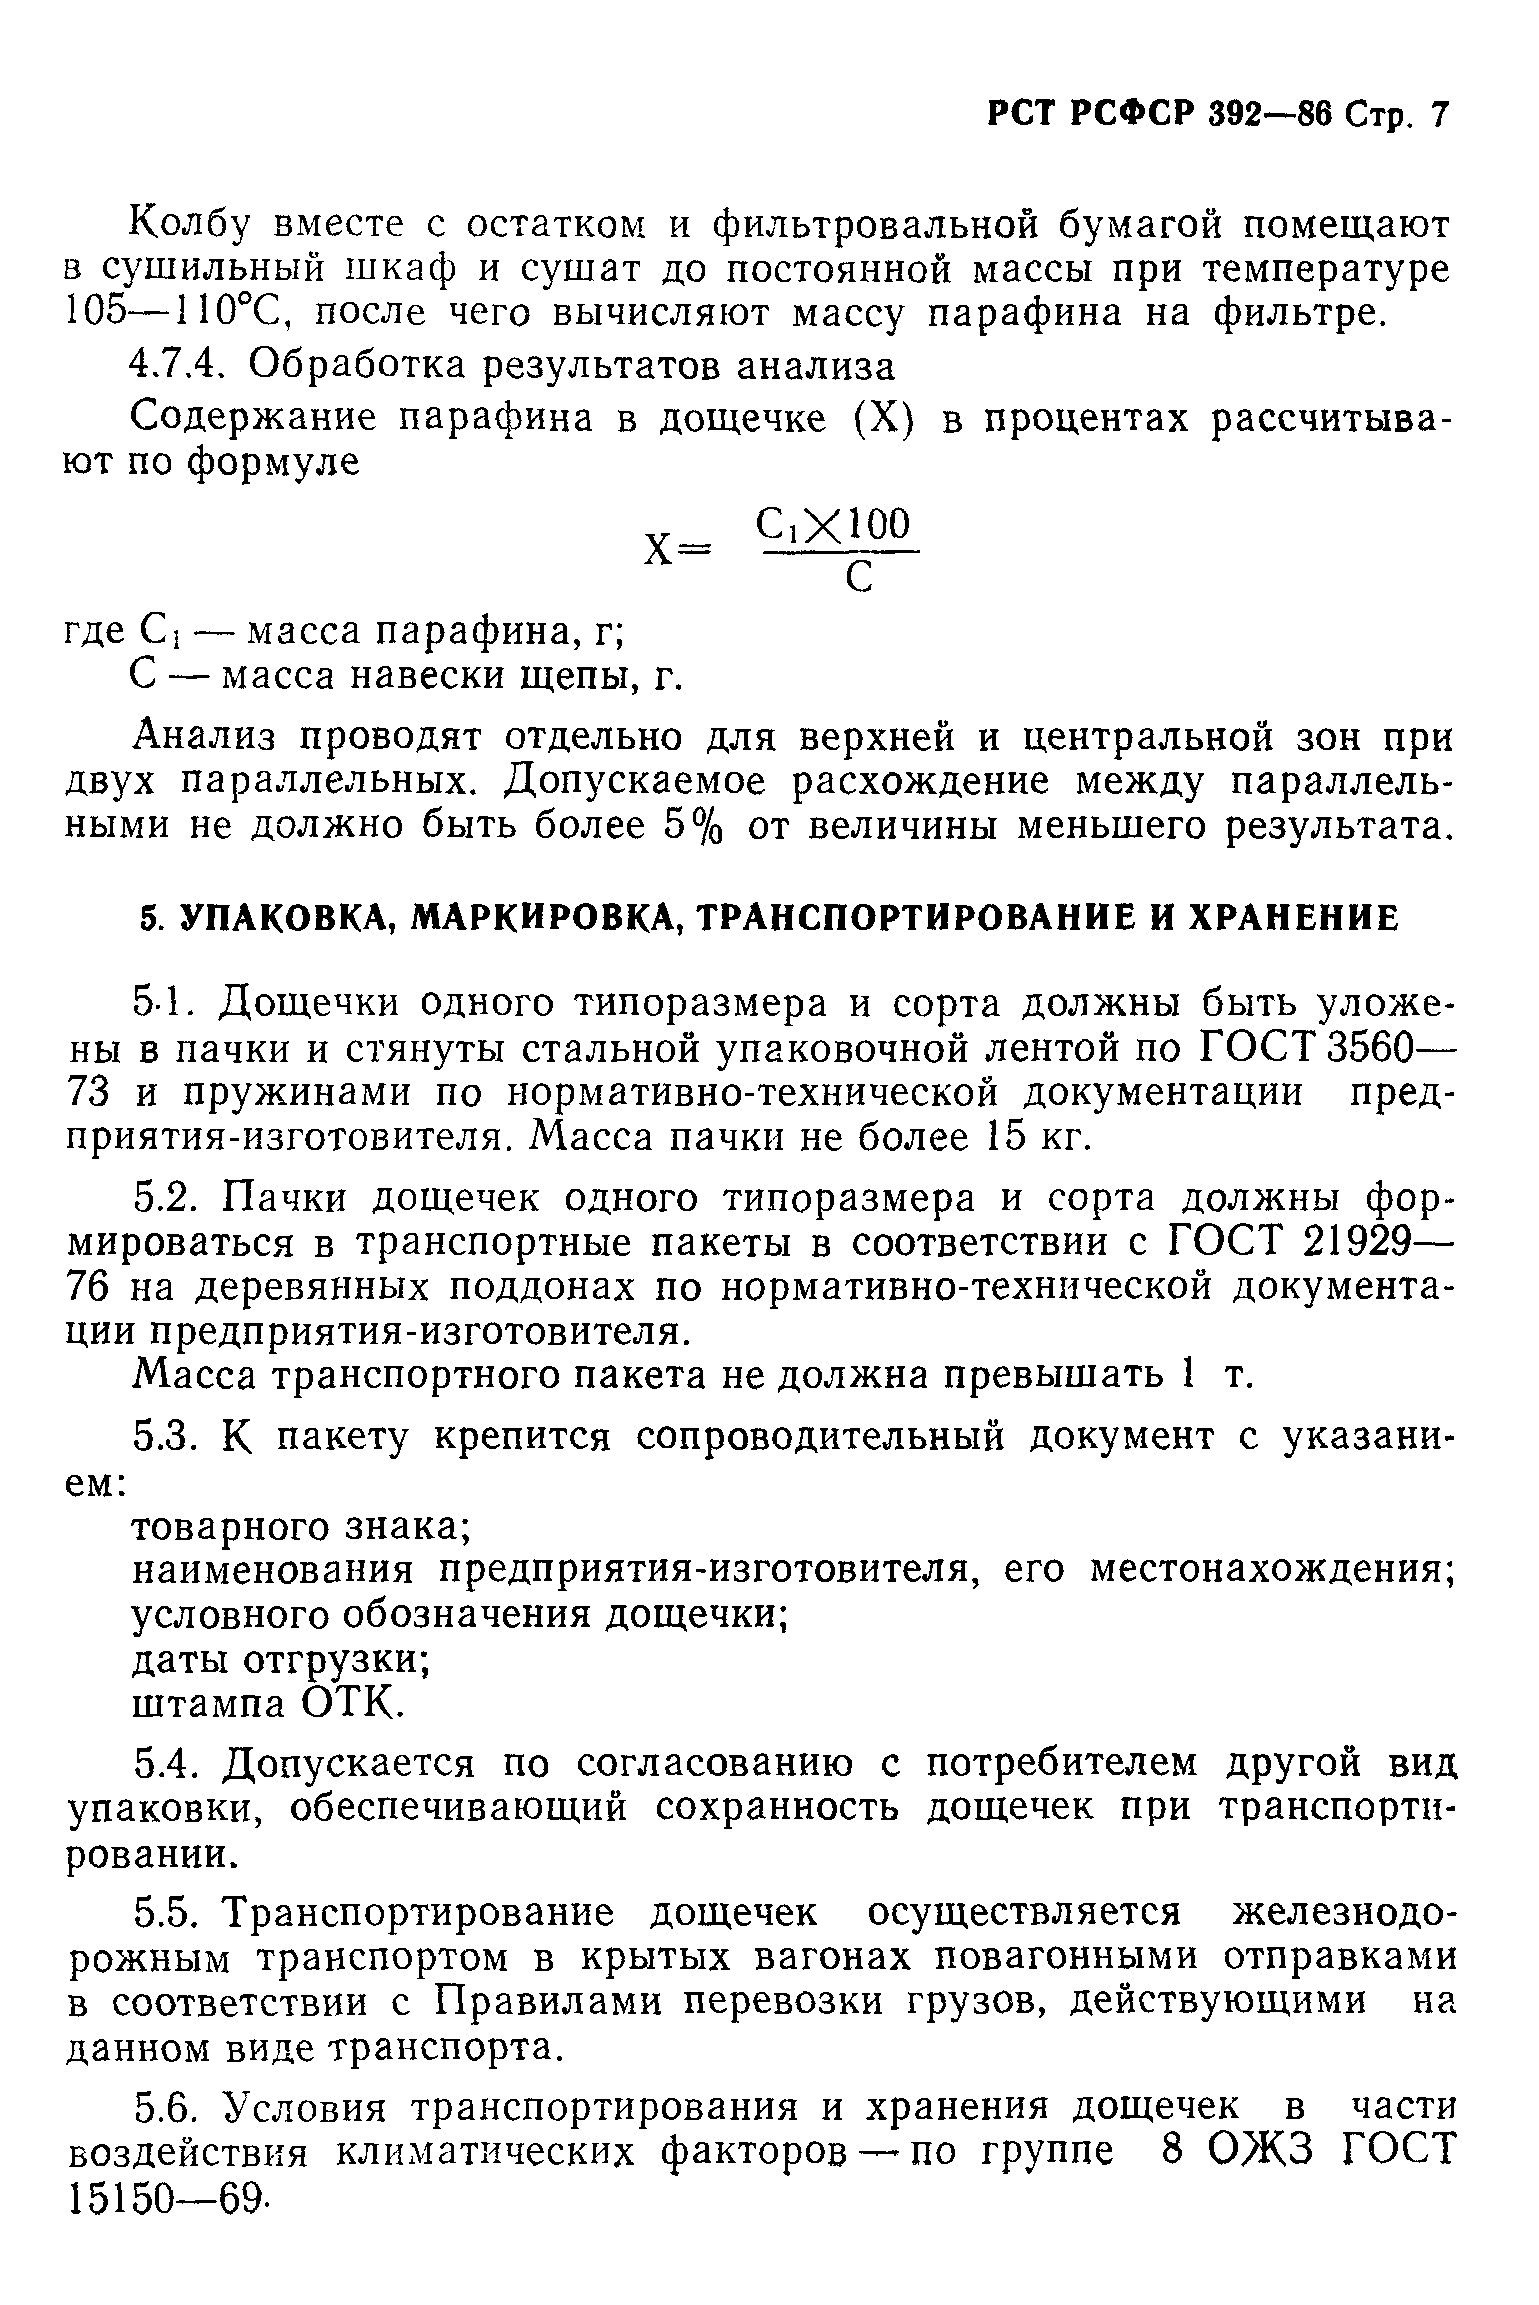 РСТ РСФСР 392-86